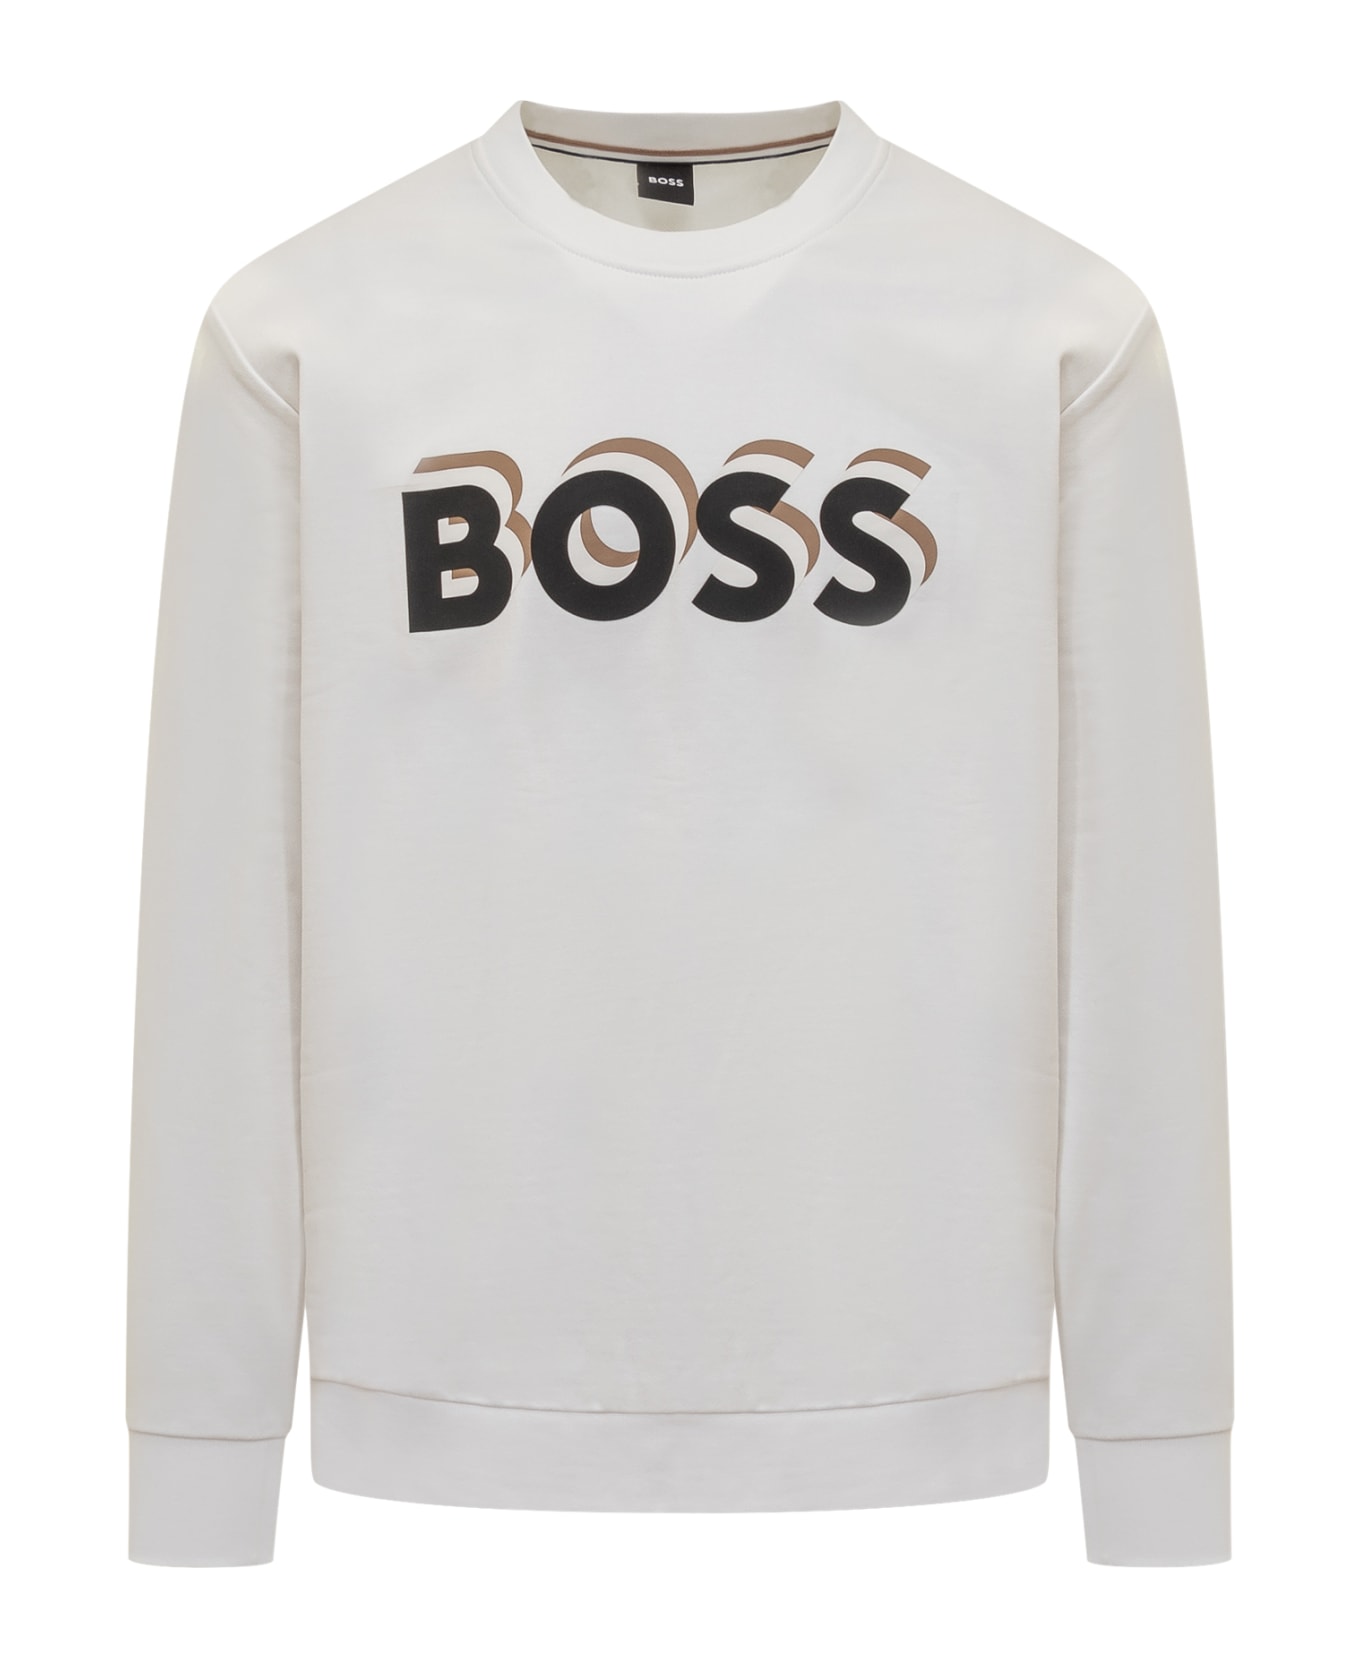 Hugo Boss Sweatshirt With Logo - WHITE